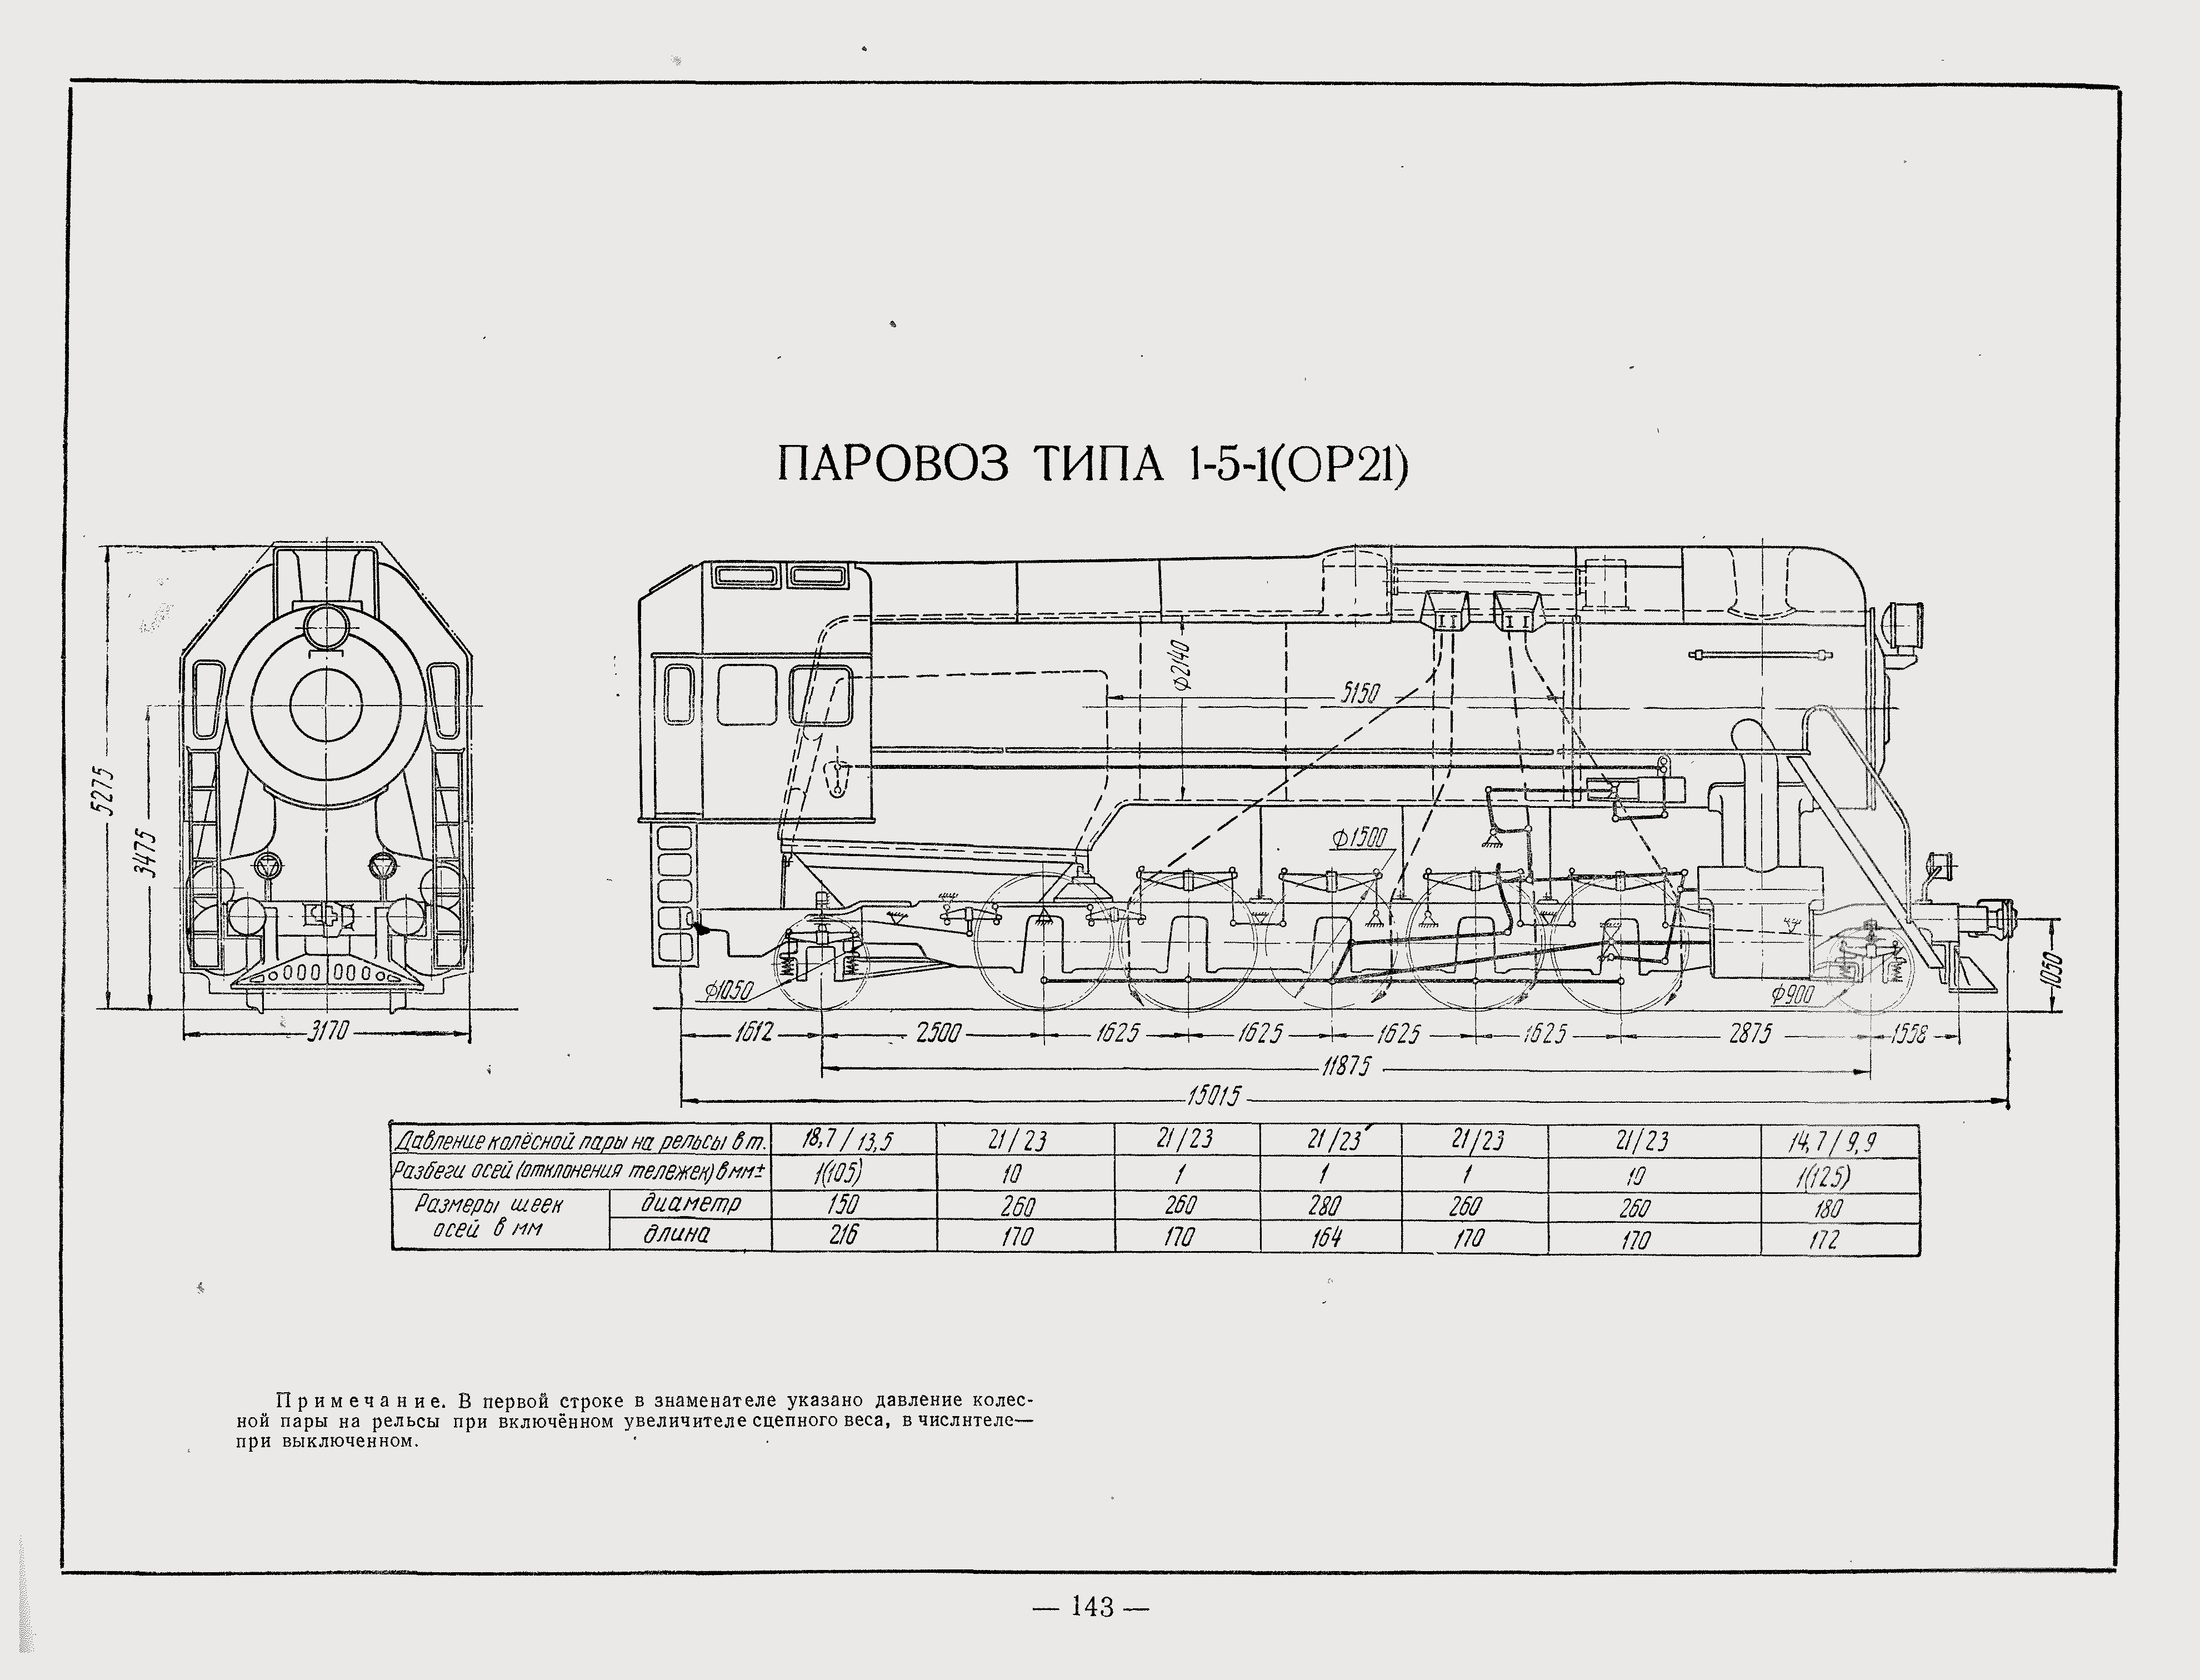 蒸汽机车构造图纸下载图片